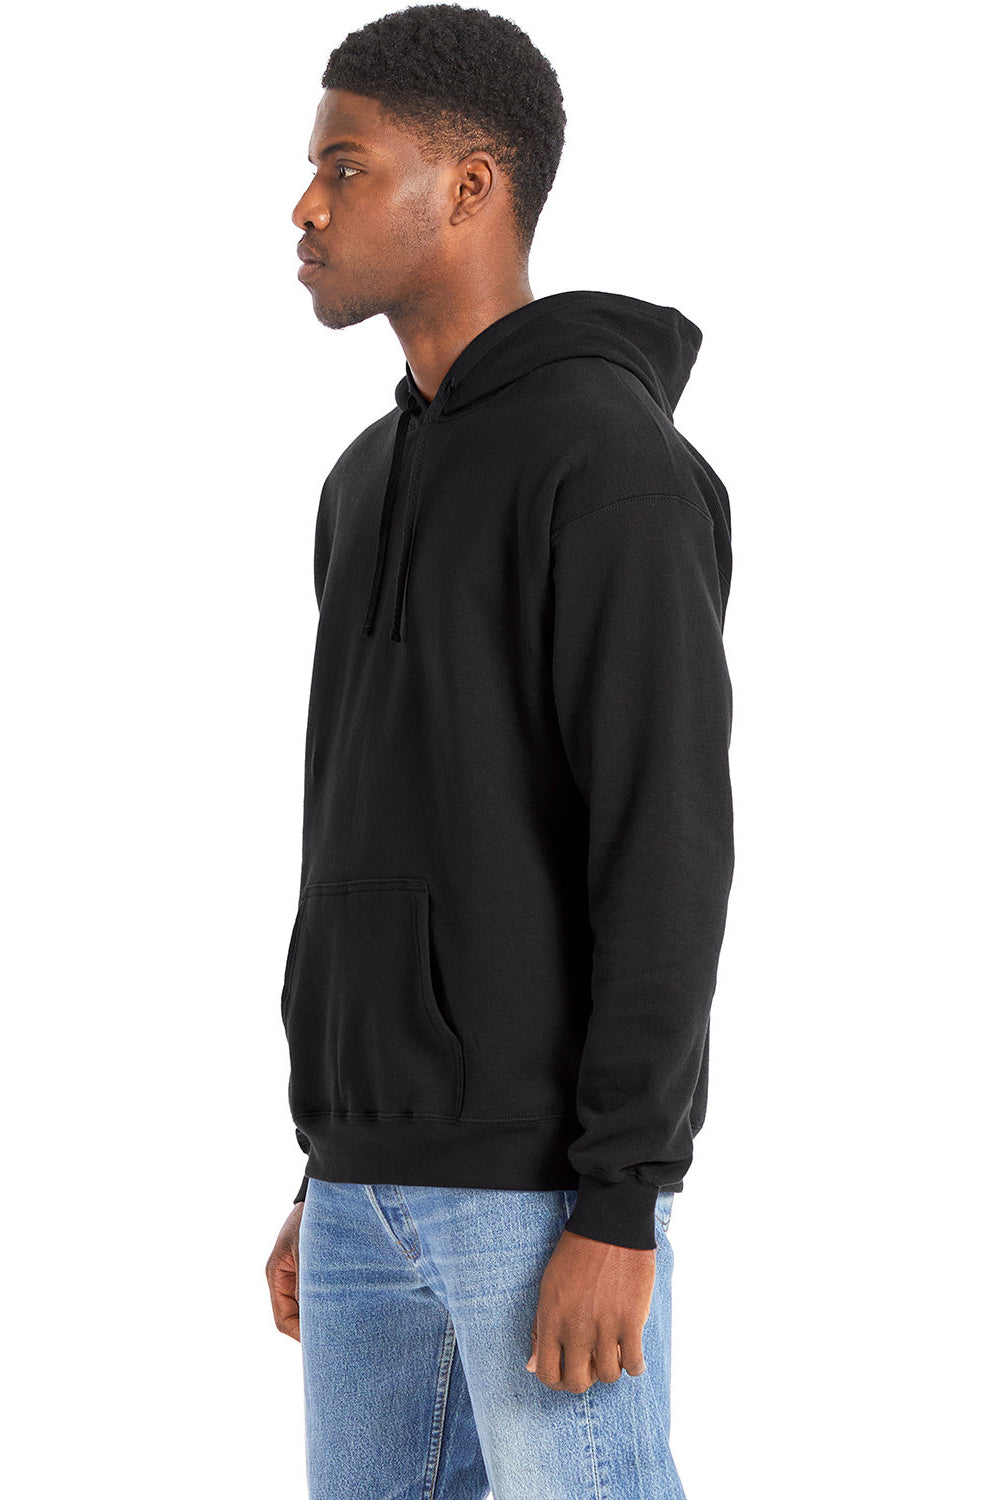 Hanes RS170 Mens Perfect Sweats Hooded Sweatshirt Hoodie Black 3Q